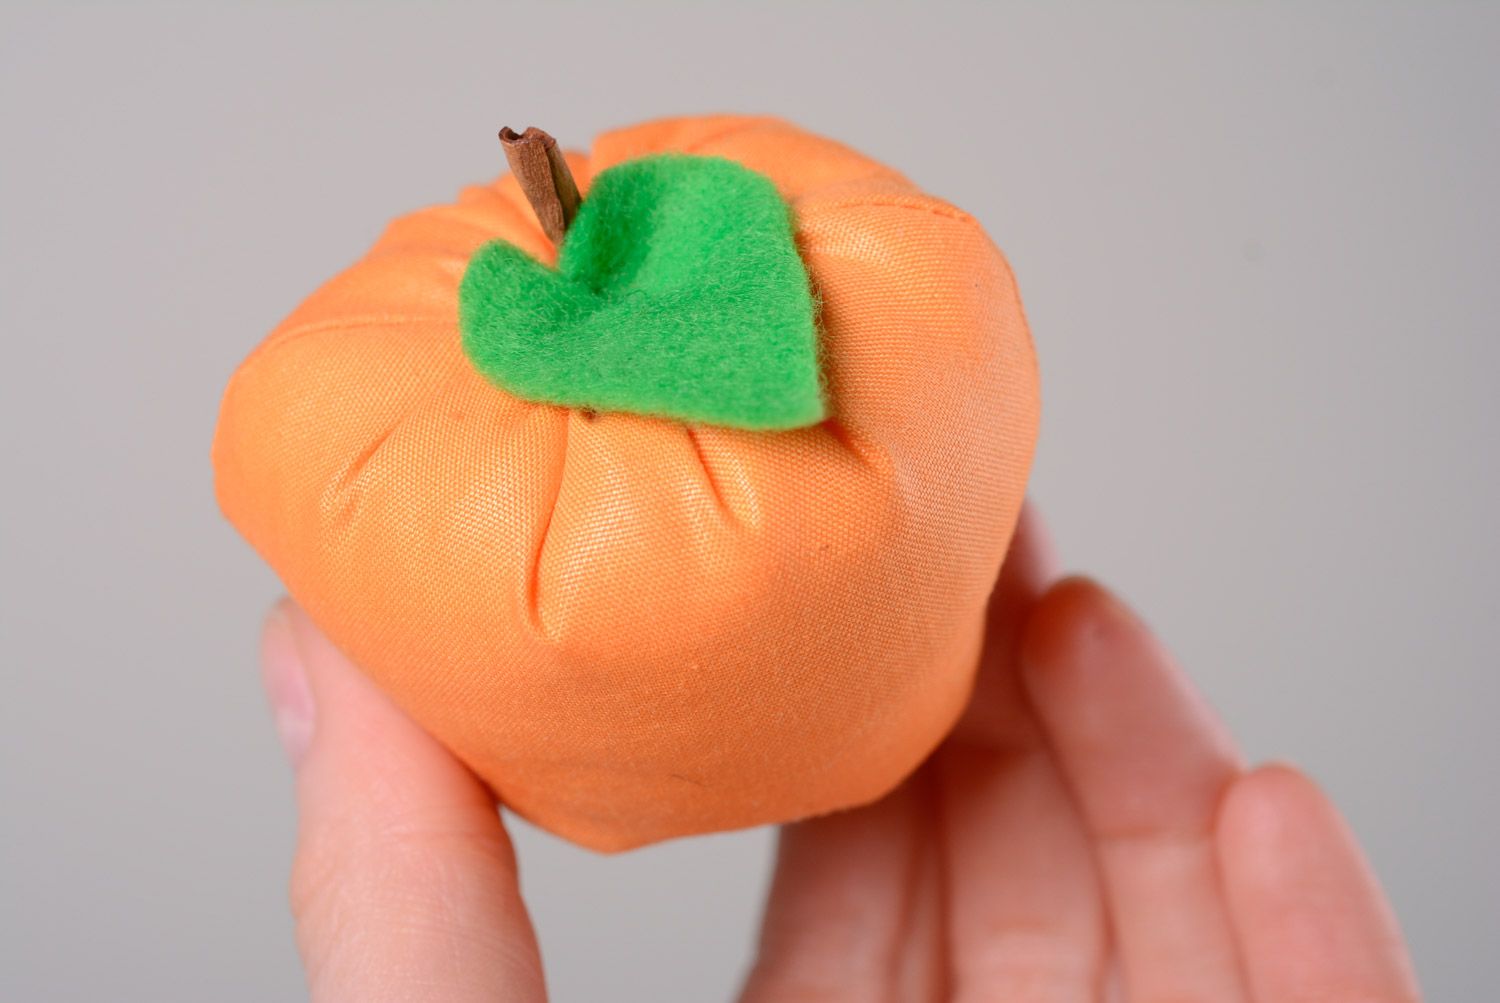 Оранжевая авторская игрушка из хлопчатобумажной ткани в виде яблока ручной работы фото 2